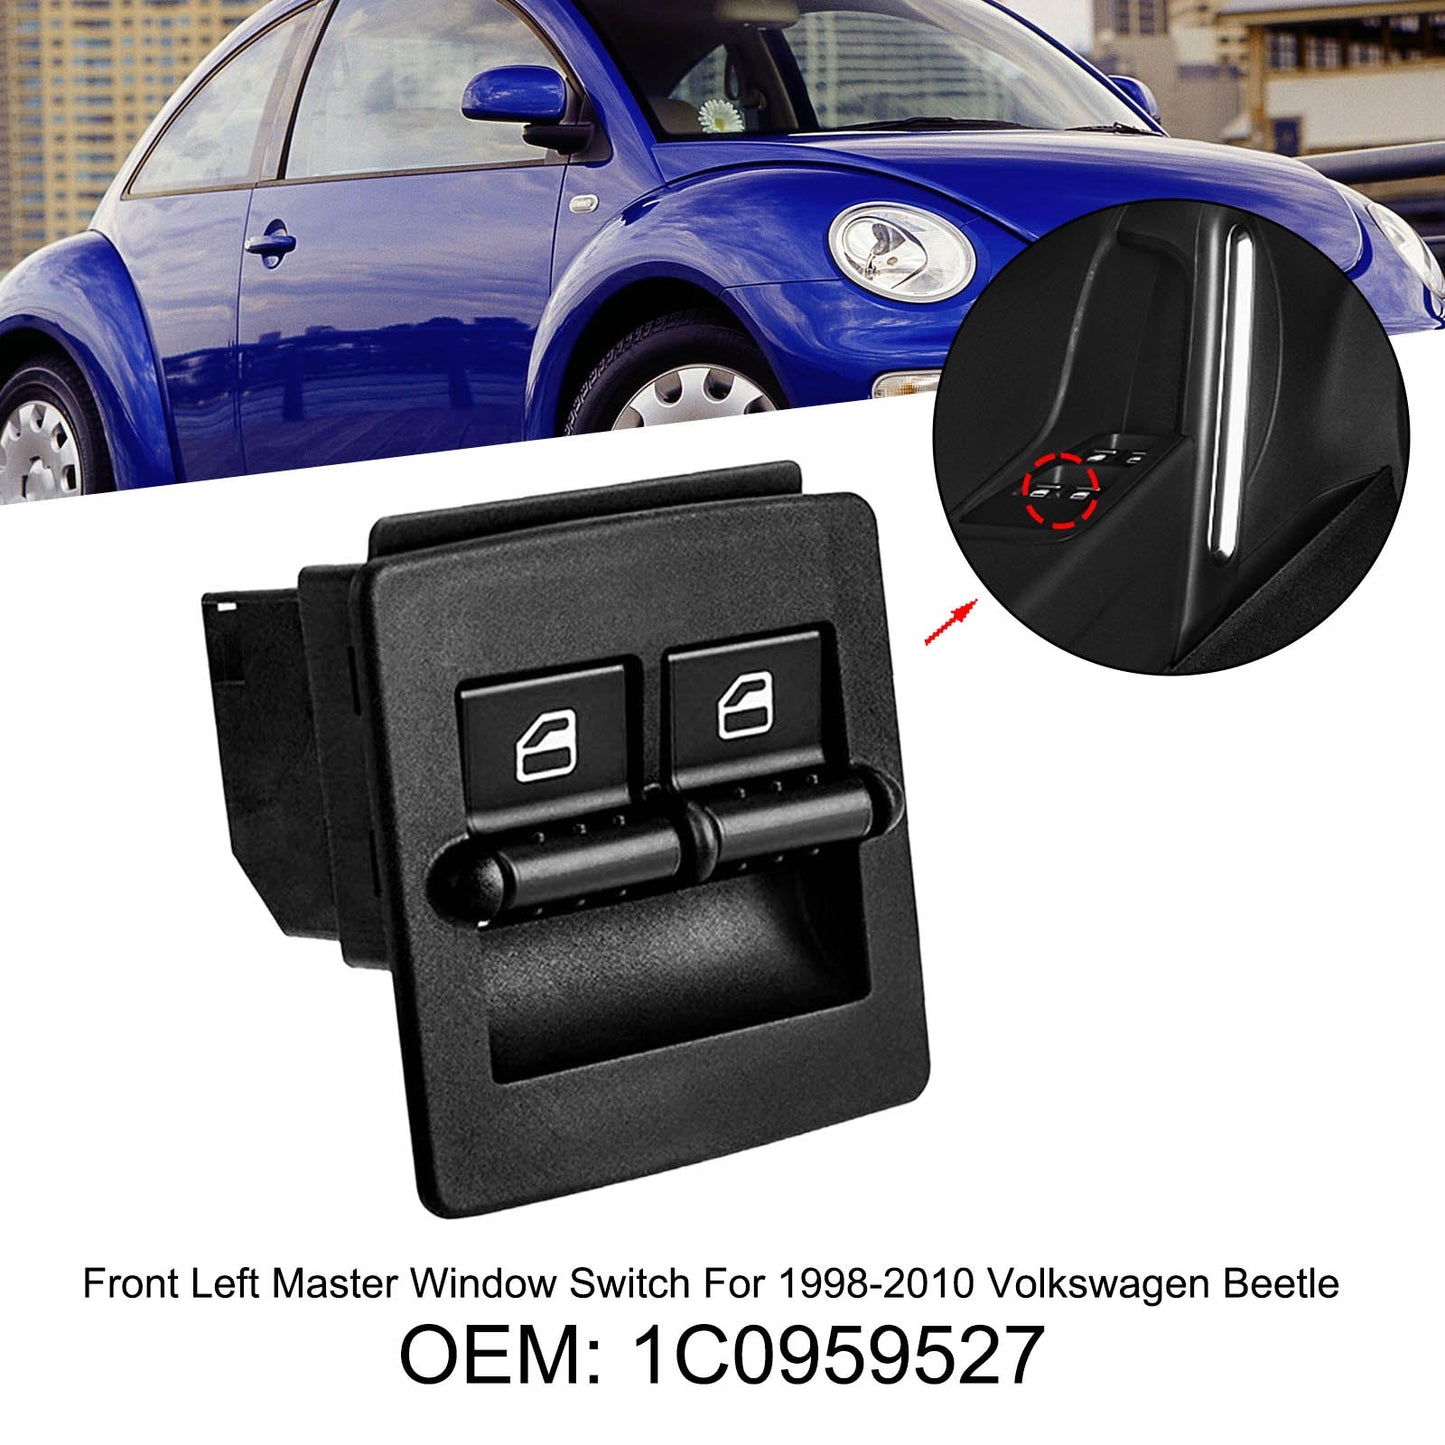 Front Left Master Window Switch For 1998-2010 Volkswagen Beetle 1C0959527